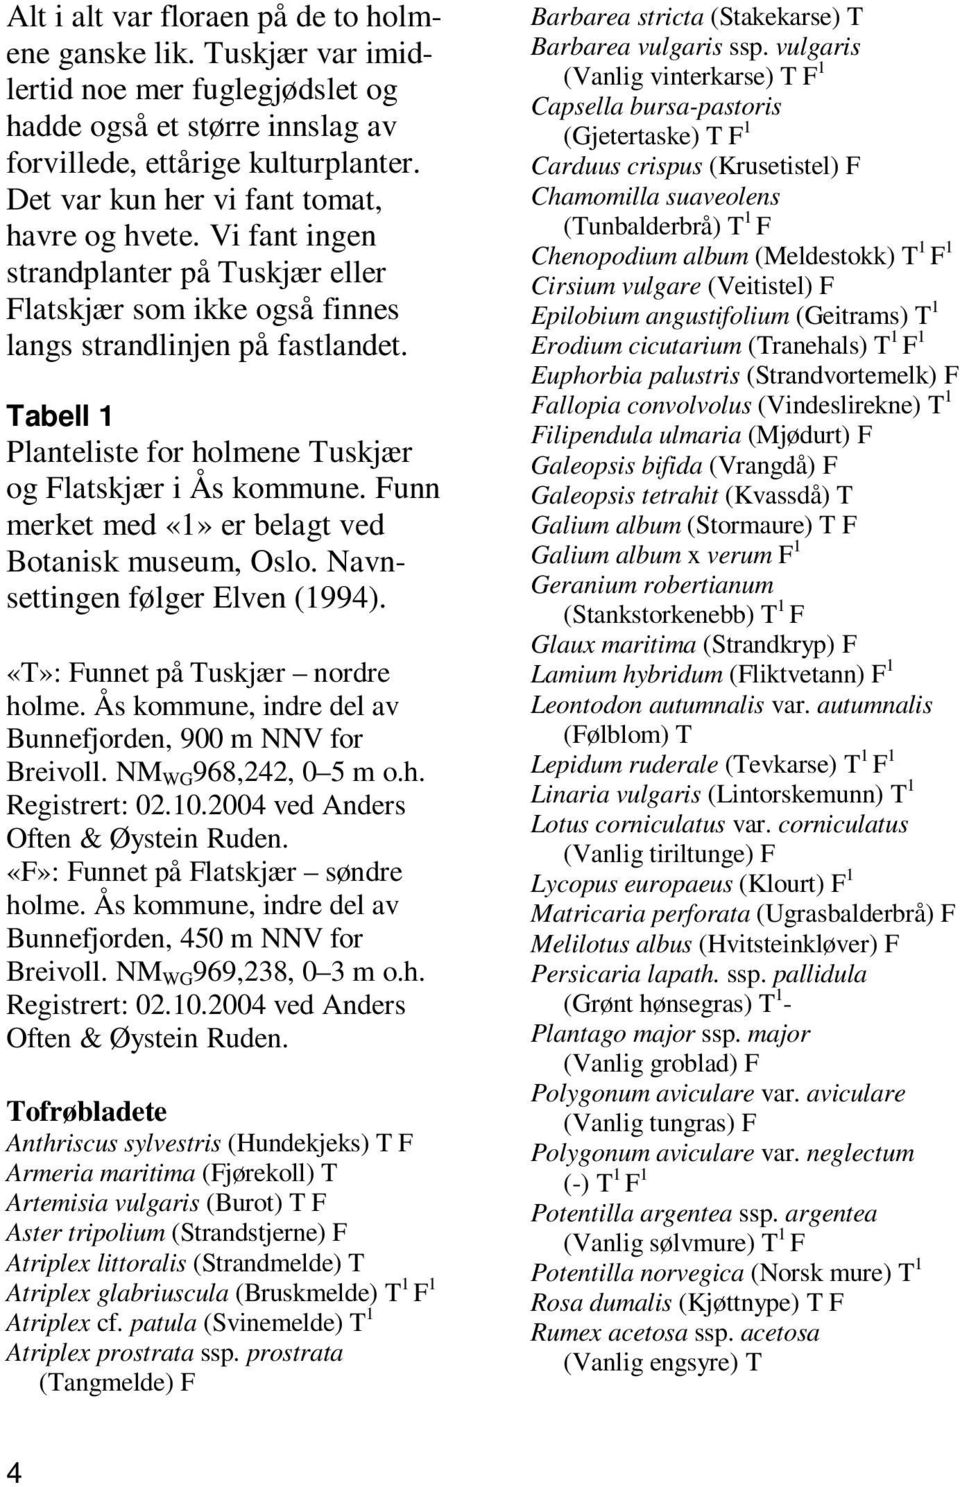 Tabell 1 Planteliste for holmene Tuskjær og Flatskjær i Ås kommune. Funn merket med «1» er belagt ved Botanisk museum, Oslo. Navnsettingen følger Elven (1994). «T»: Funnet på Tuskjær nordre holme.